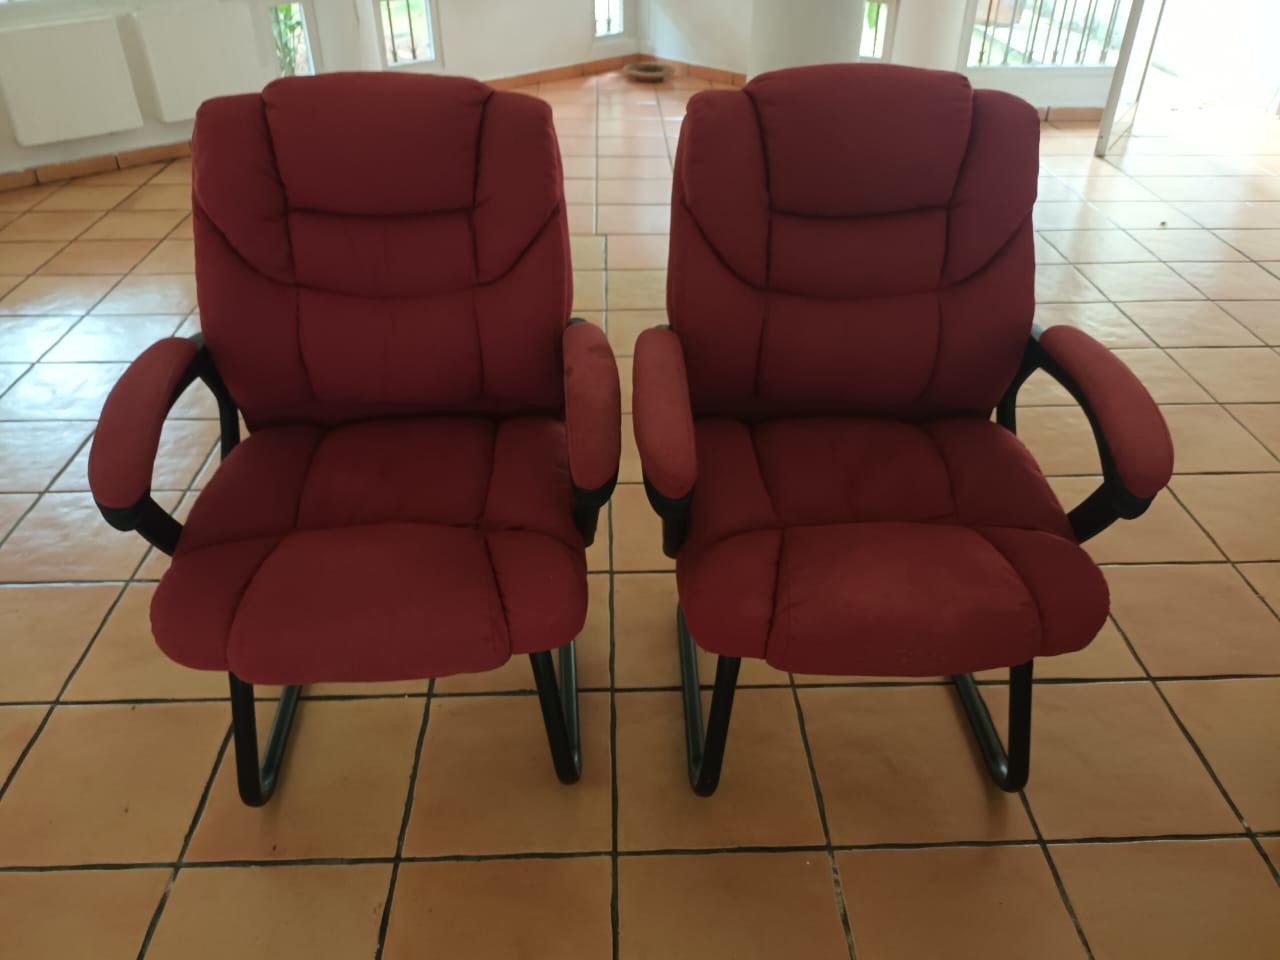 articulos de oficina - Dos sillas para oficina con forro de tela color vino.